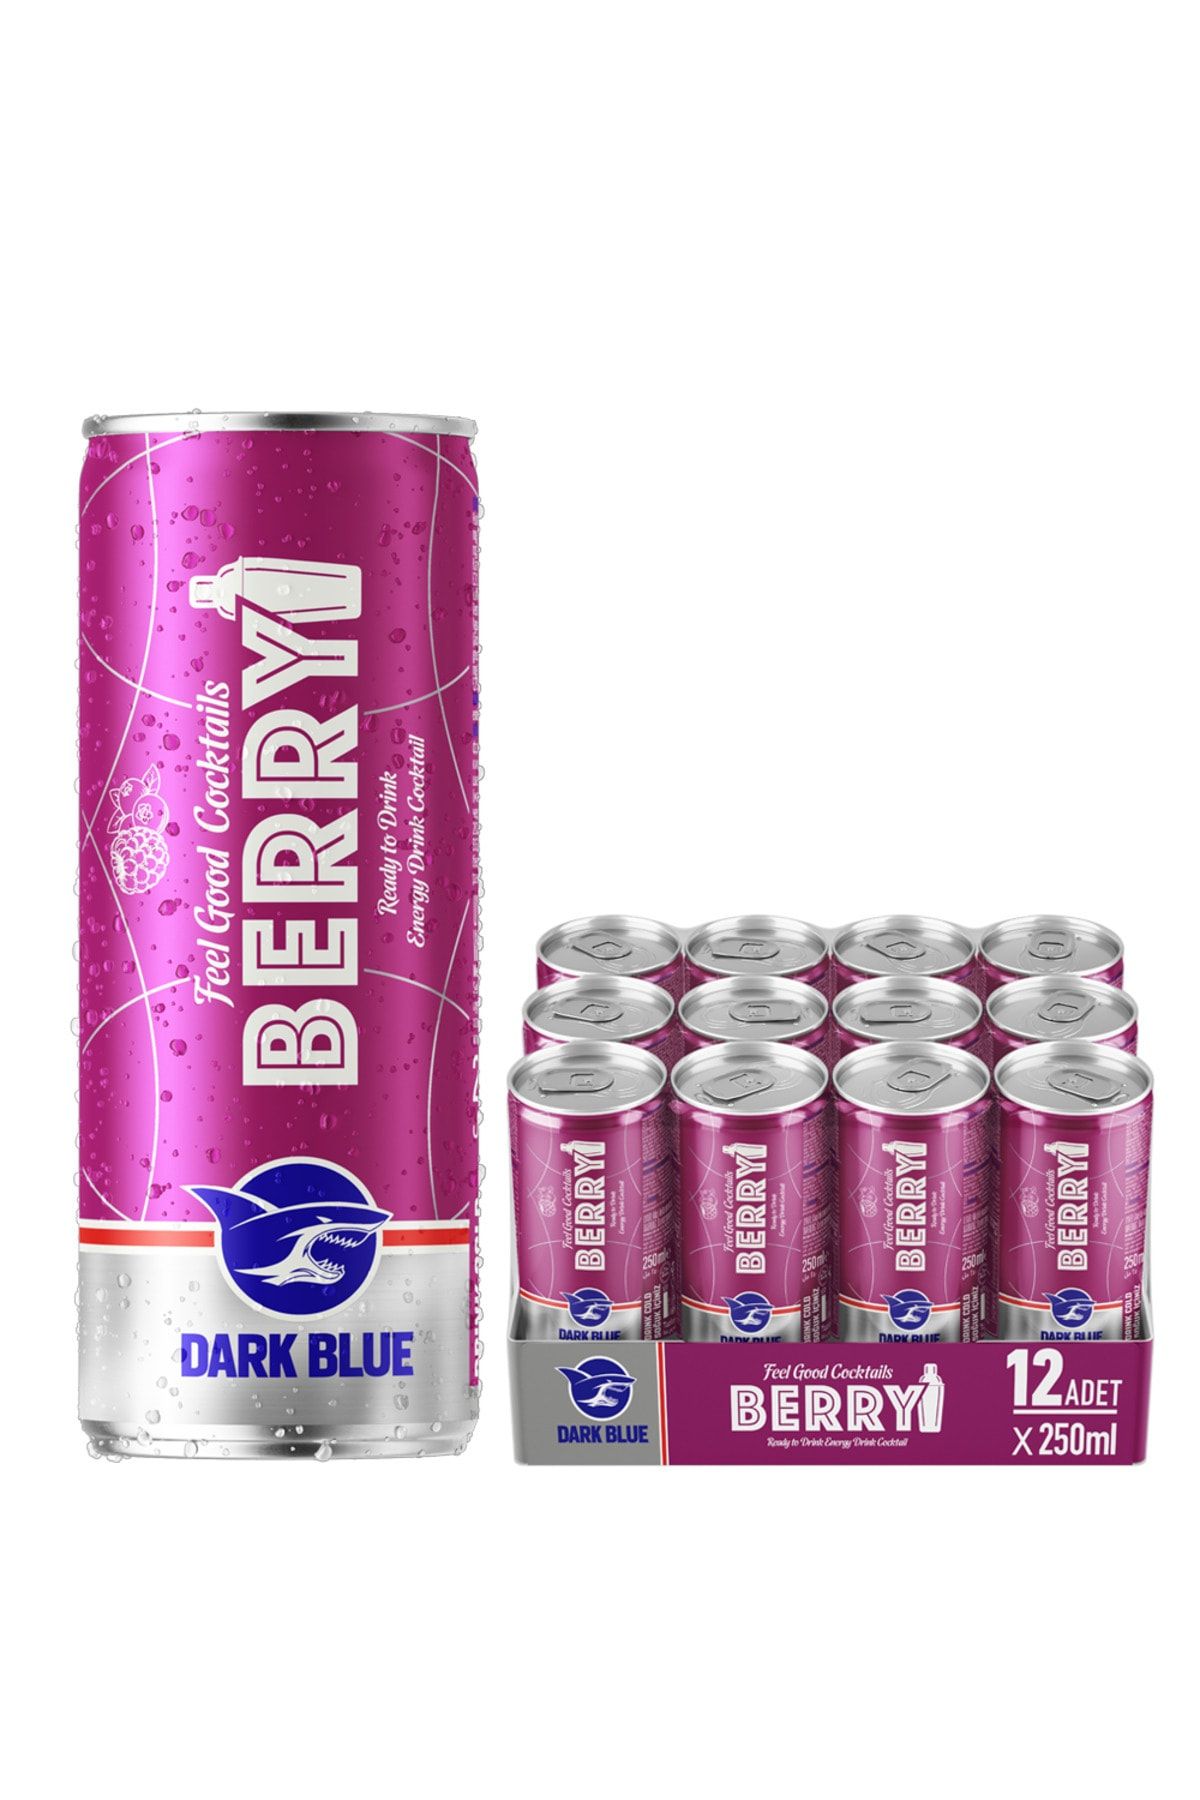 Dark blue Berry Enerji Içeceği, 250 ml (12'Lİ PAKET, 12 ADET X 250 ML)